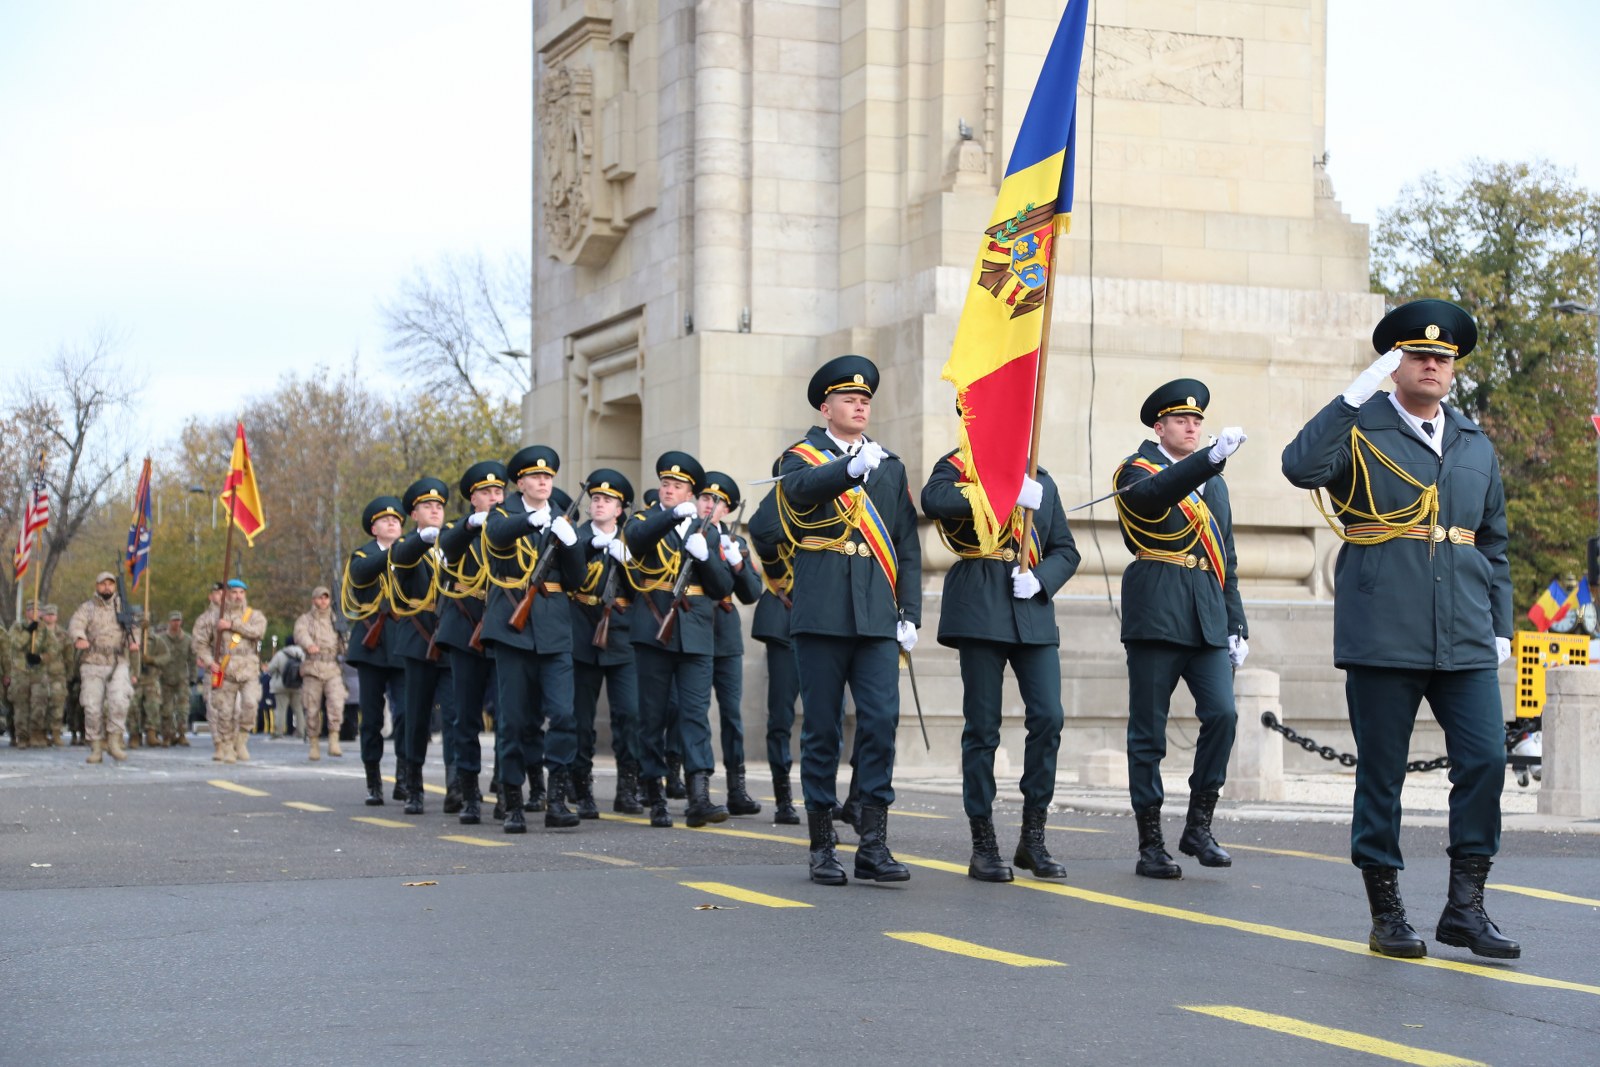 (ВИДЕО, ФОТО) Военные из Молдовы приняли участие в параде в Румынии. Вместе с солдатами из 10 стран